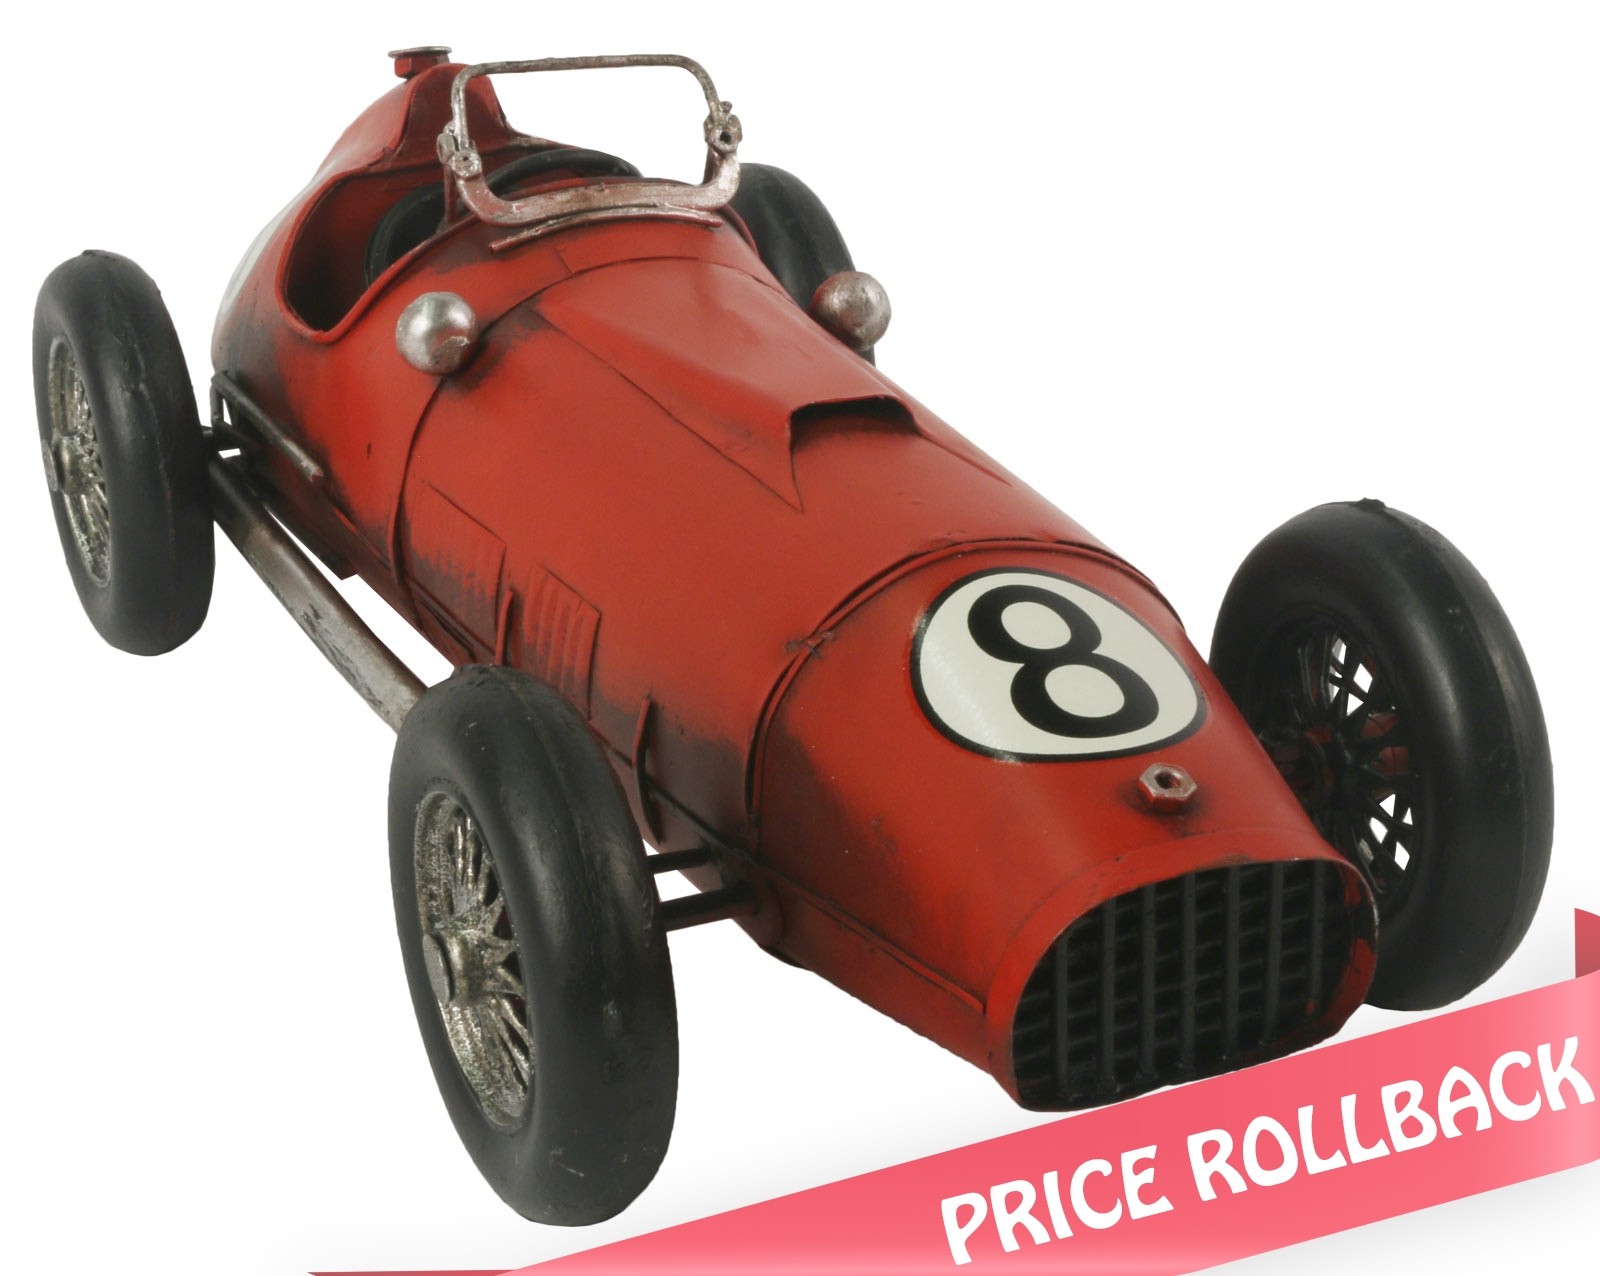 Red Racing Car - 31.5cm